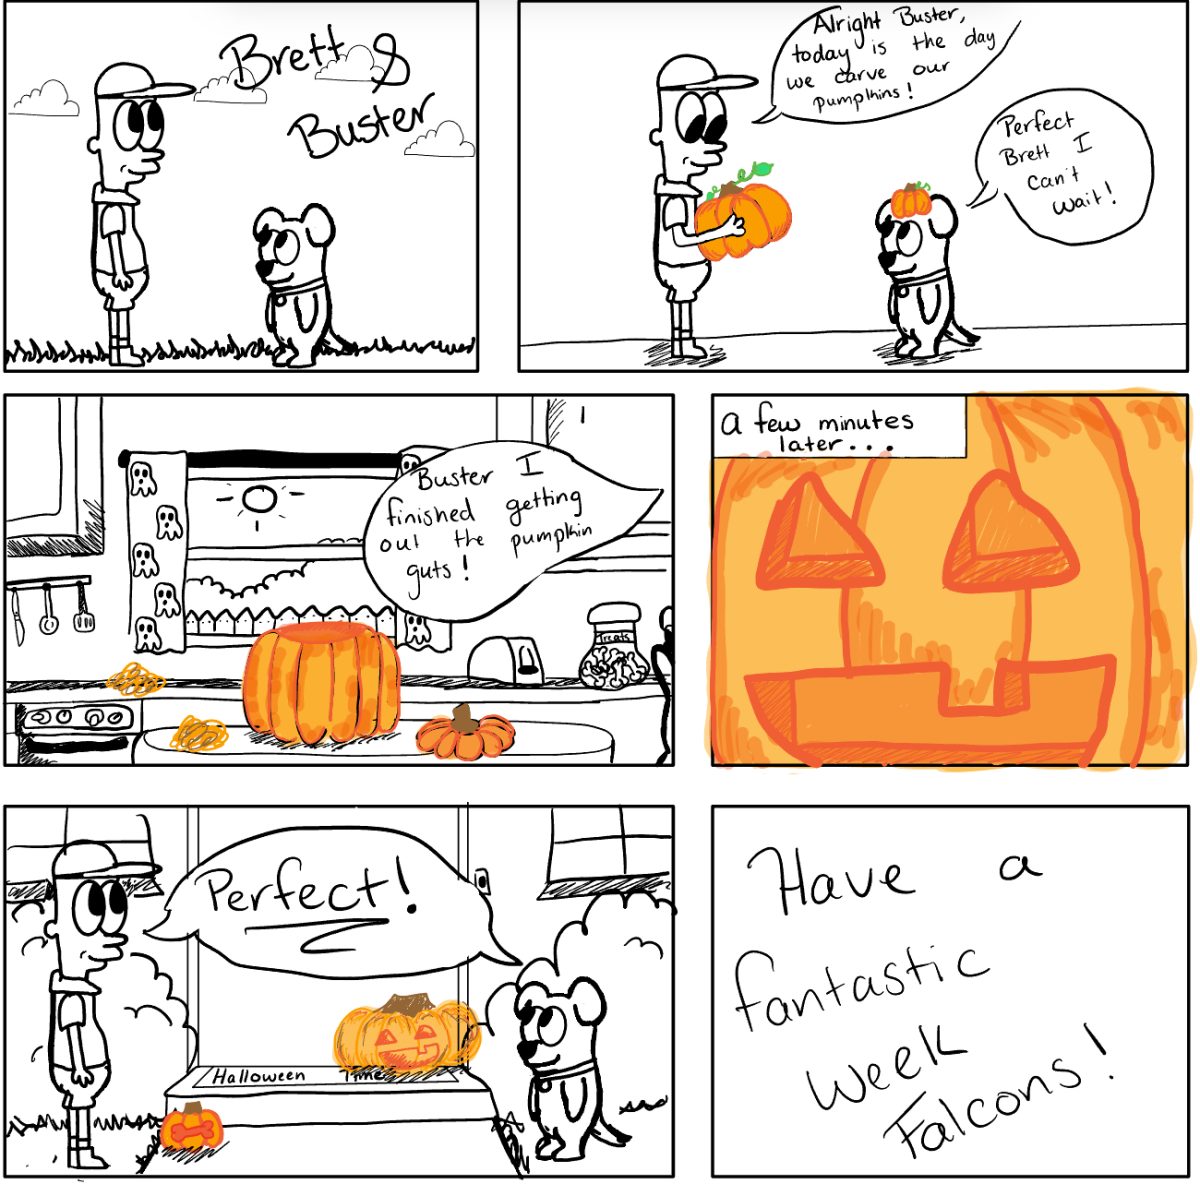 Brett and Buster Embrace Autumn’s Spirit: A Pumpkin Carving Adventure!